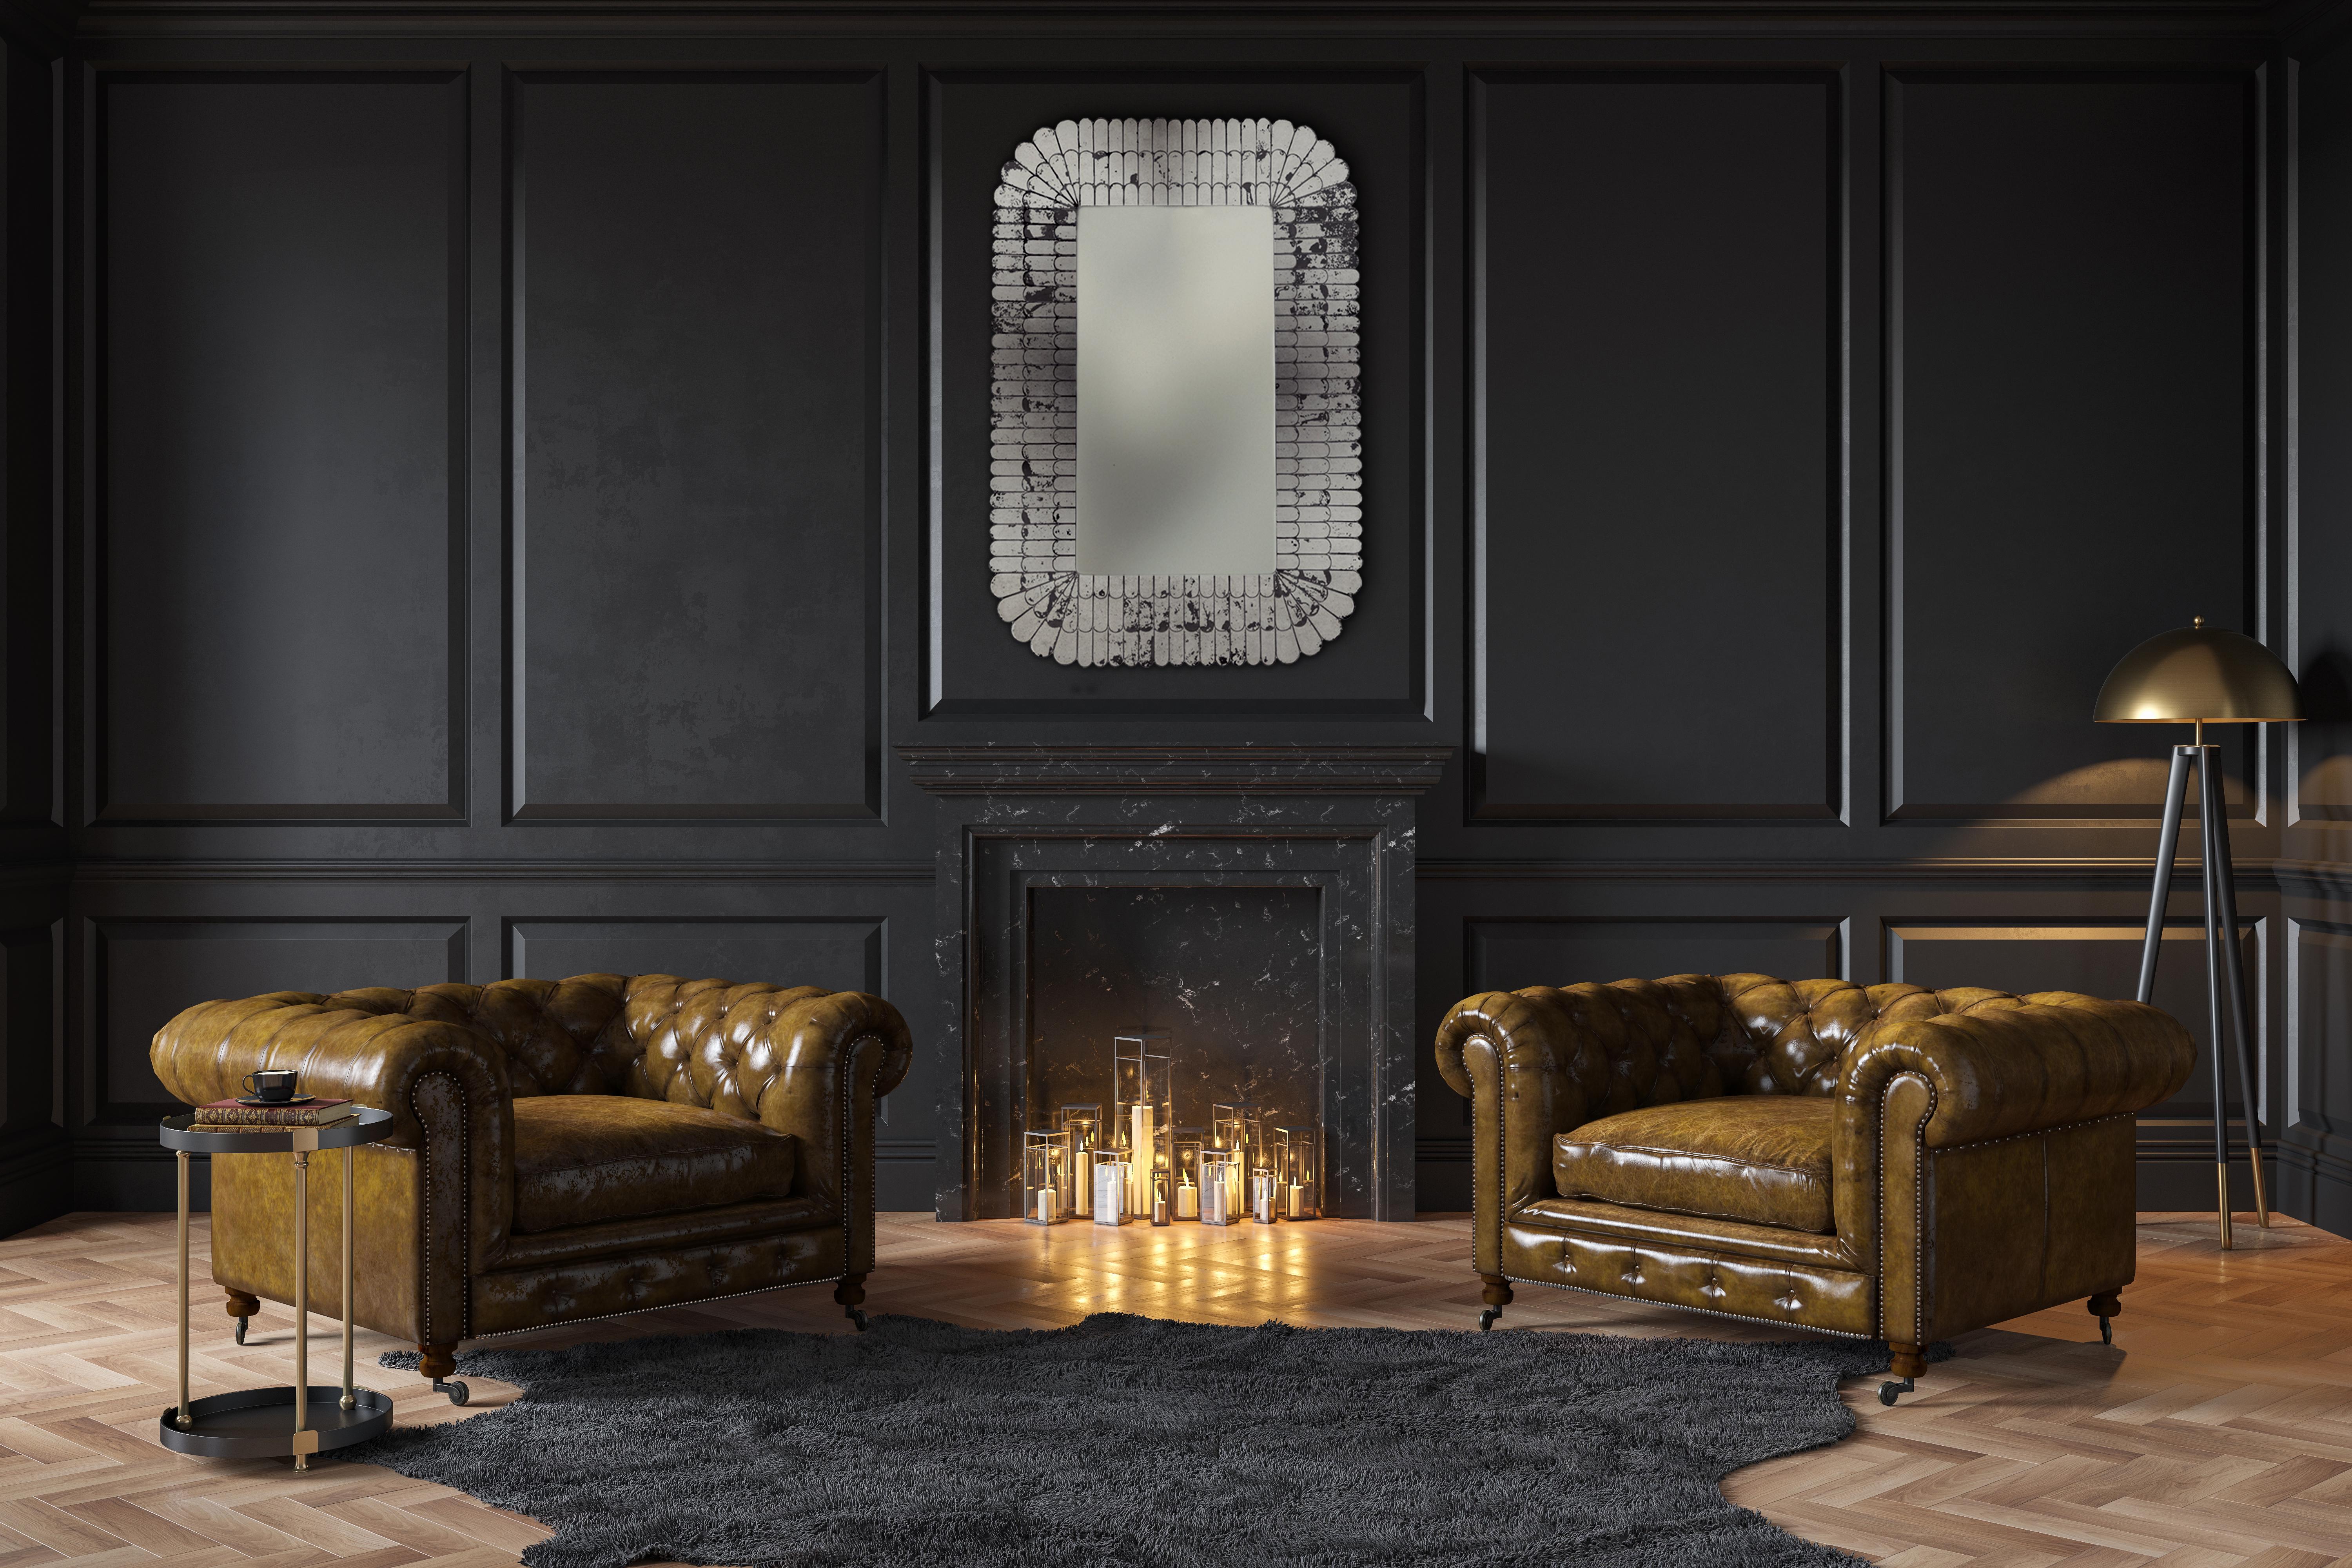 Der richtige Wandspiegel kann Ihre Einrichtung vervollständigen. Dieser moderne venezianische Spiegel ist die perfekte Ergänzung sowohl für klassische als auch für moderne Räume.
Größen und Farben sind variabel.

